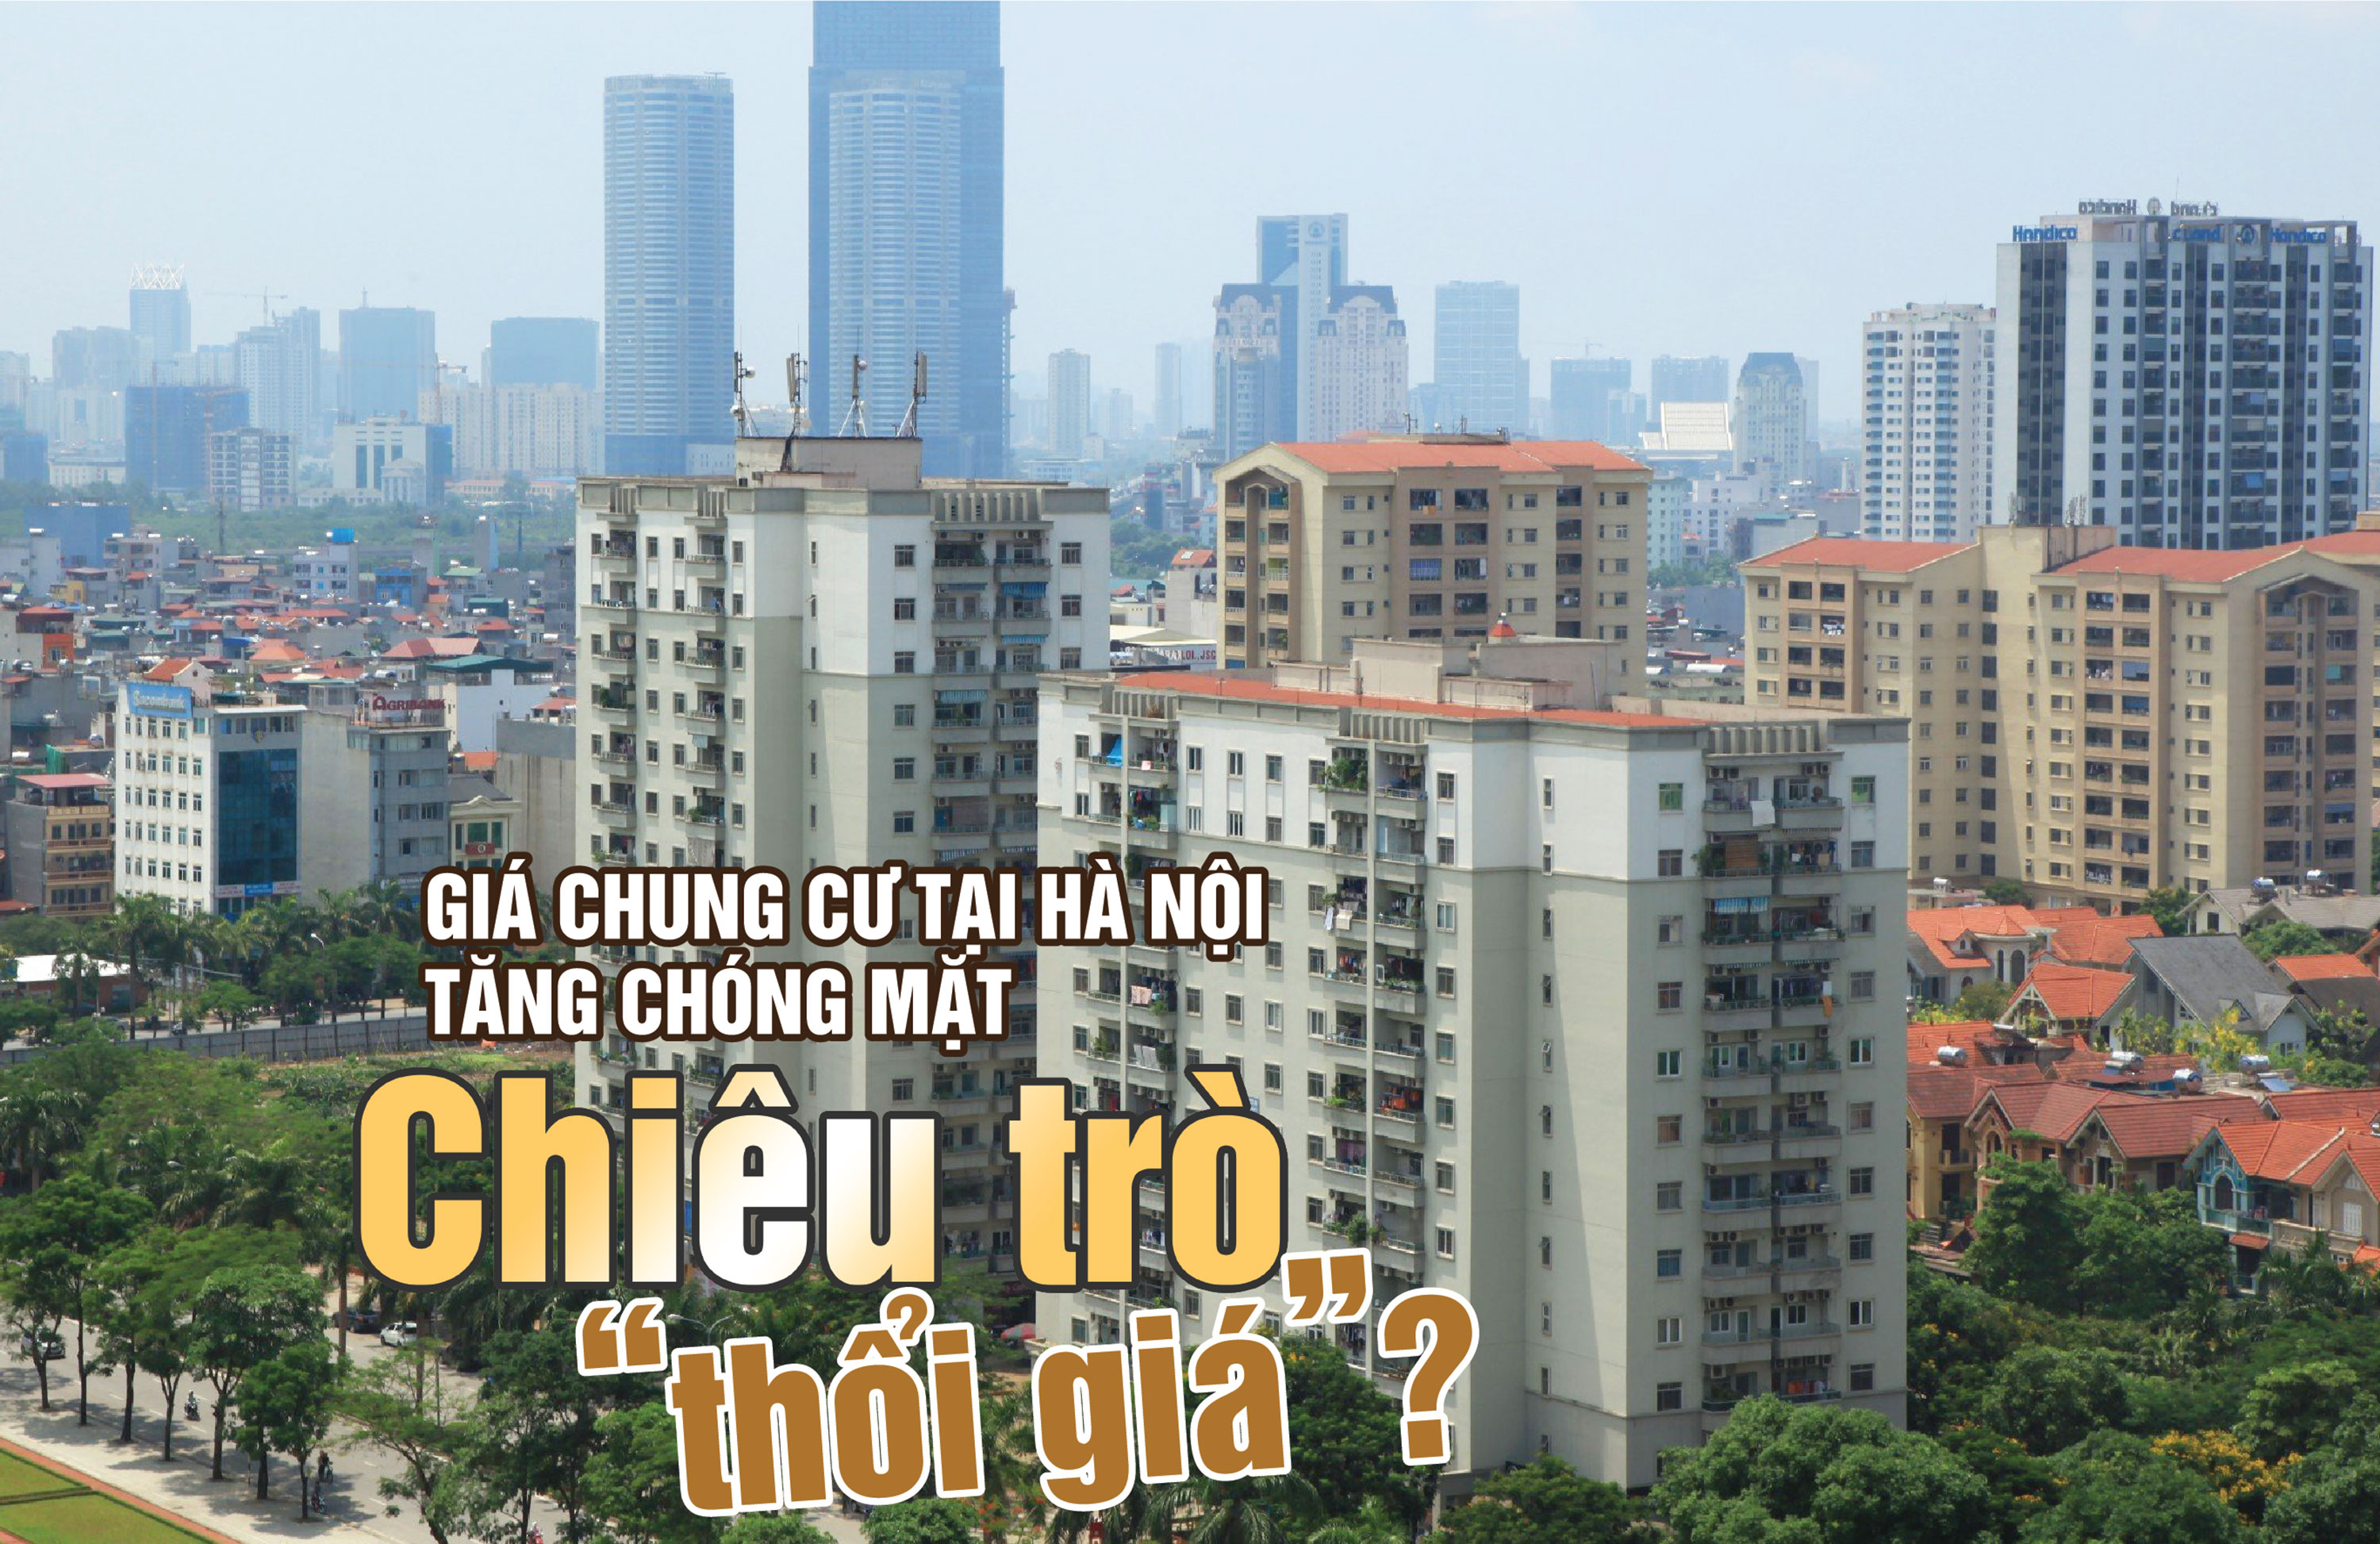 Giá chung cư tại Hà Nội tăng chóng mặt: chiêu trò “thổi giá”? - Ảnh 1